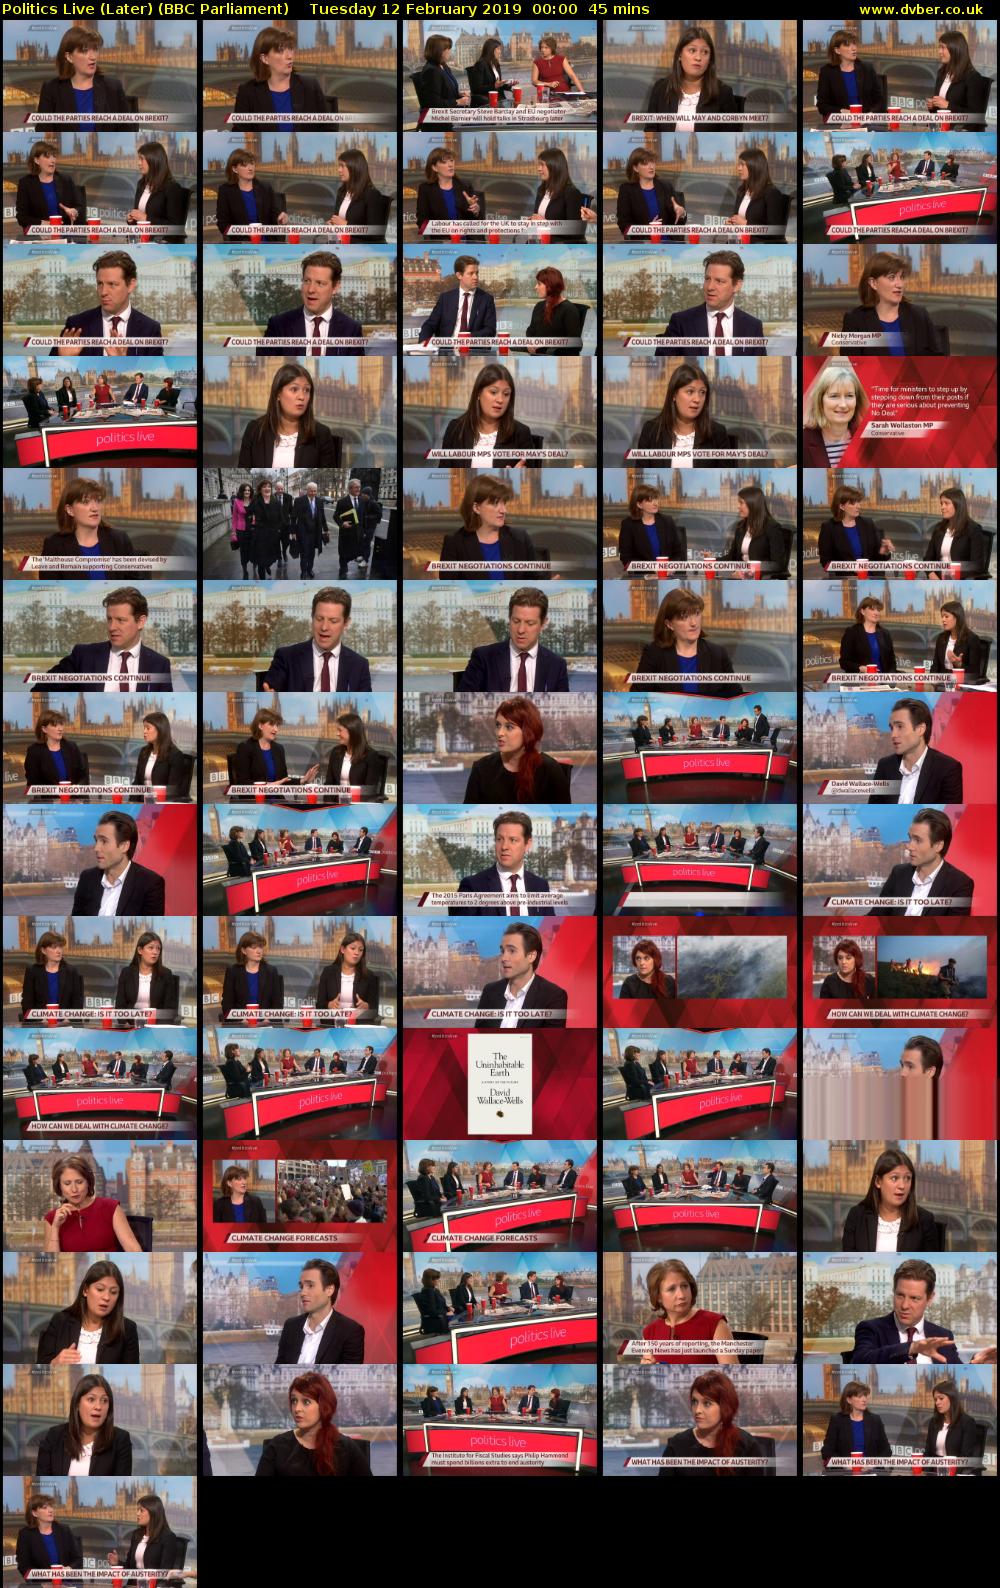 Politics Live (Later) (BBC Parliament) Tuesday 12 February 2019 00:00 - 00:45